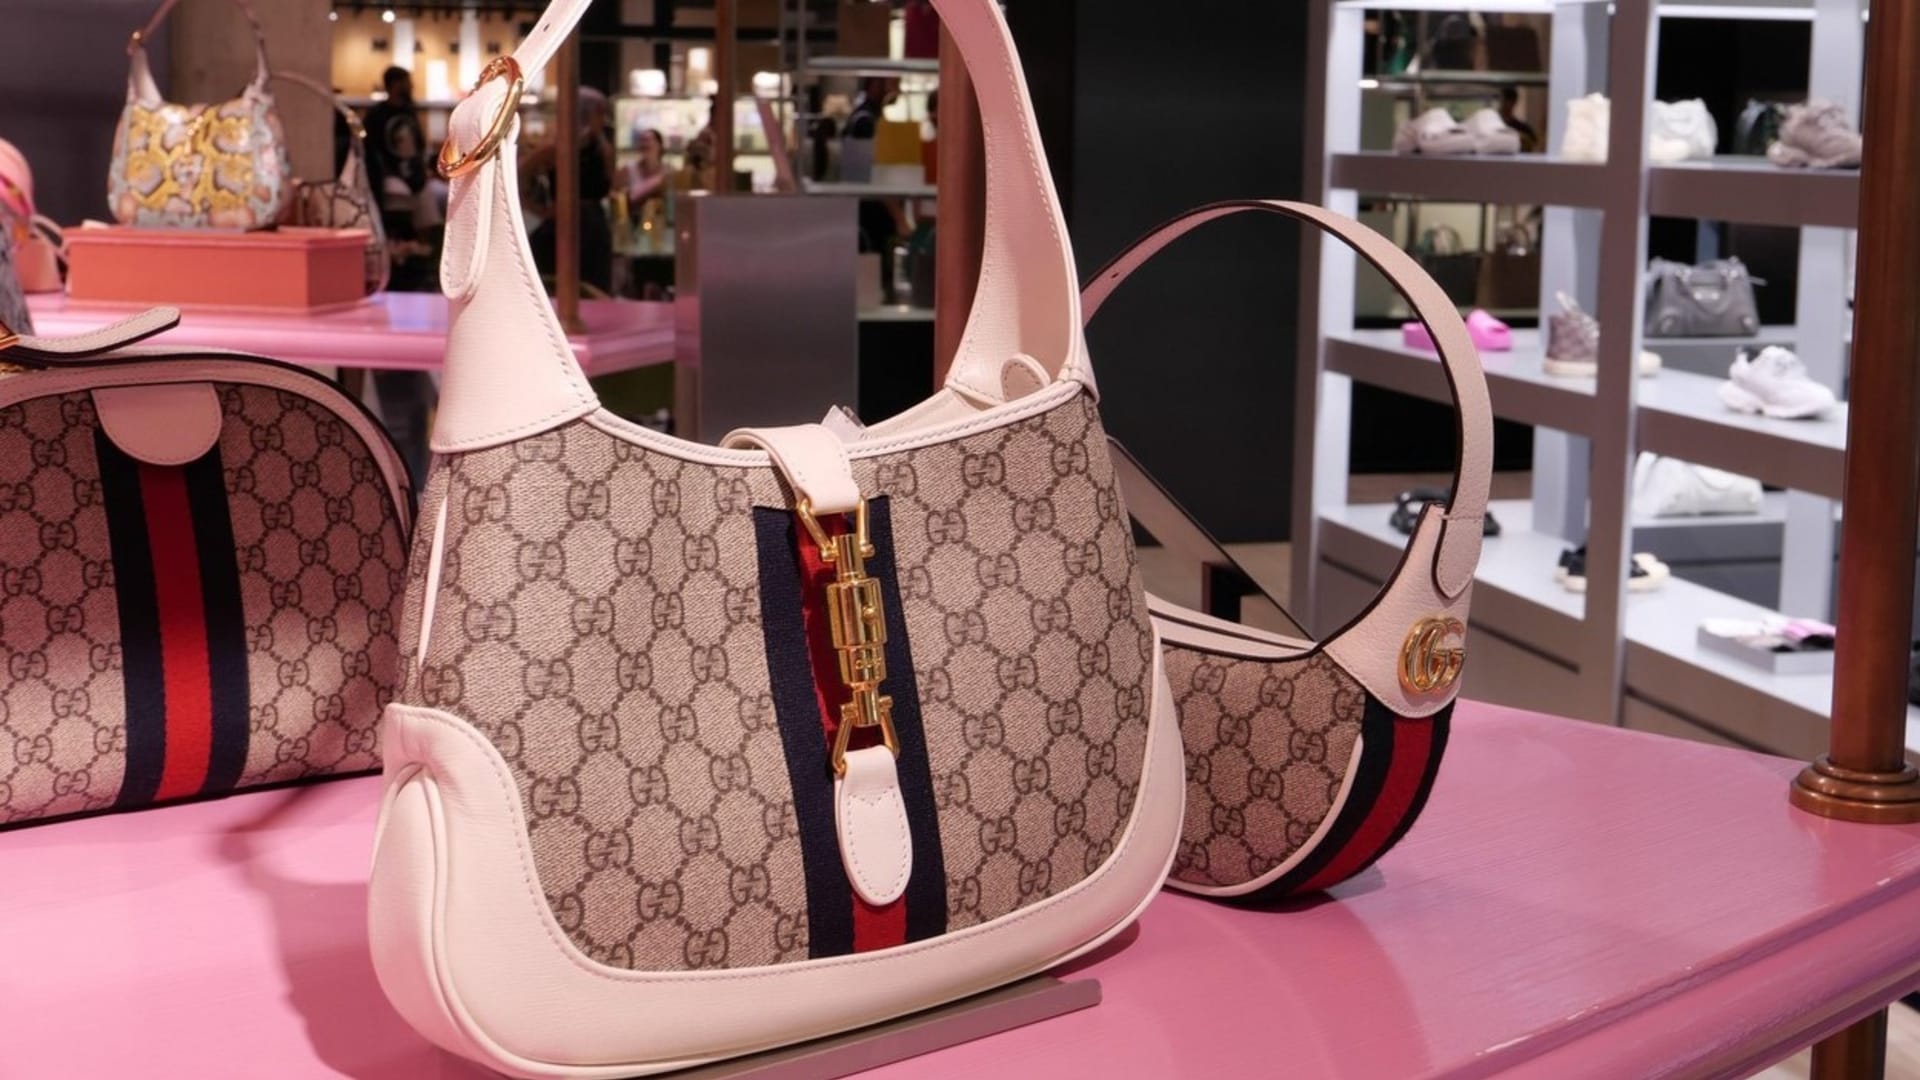 Značka Gucci je ikonou módního průmyslu.